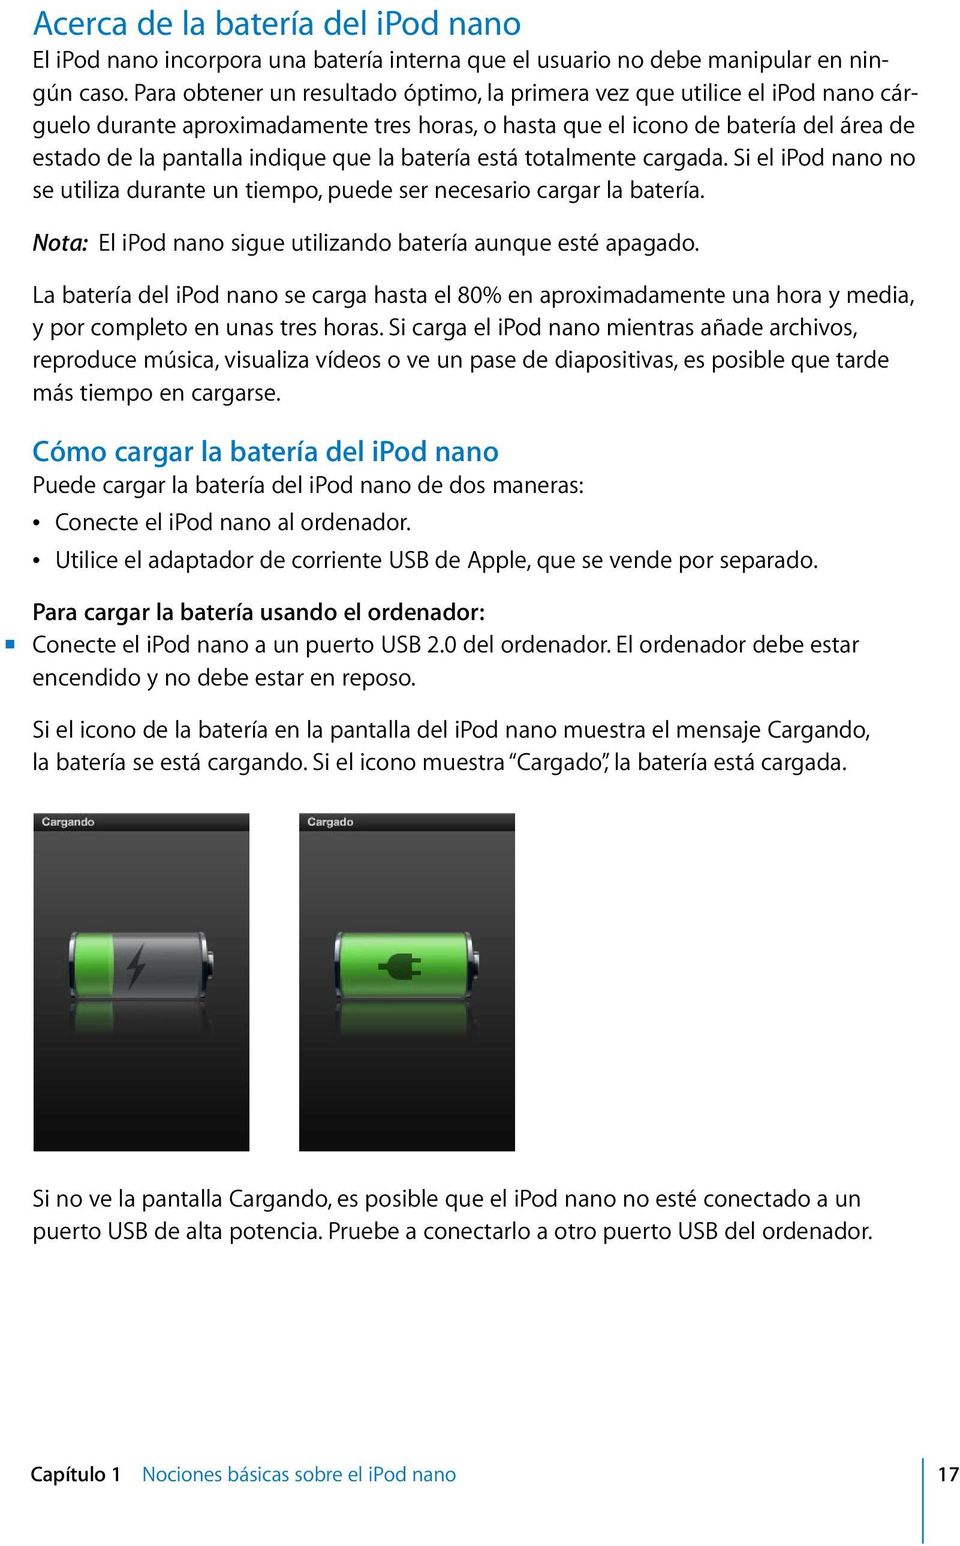 batería está totalmente cargada. Si el ipod nano no se utiliza durante un tiempo, puede ser necesario cargar la batería. Nota: El ipod nano sigue utilizando batería aunque esté apagado.